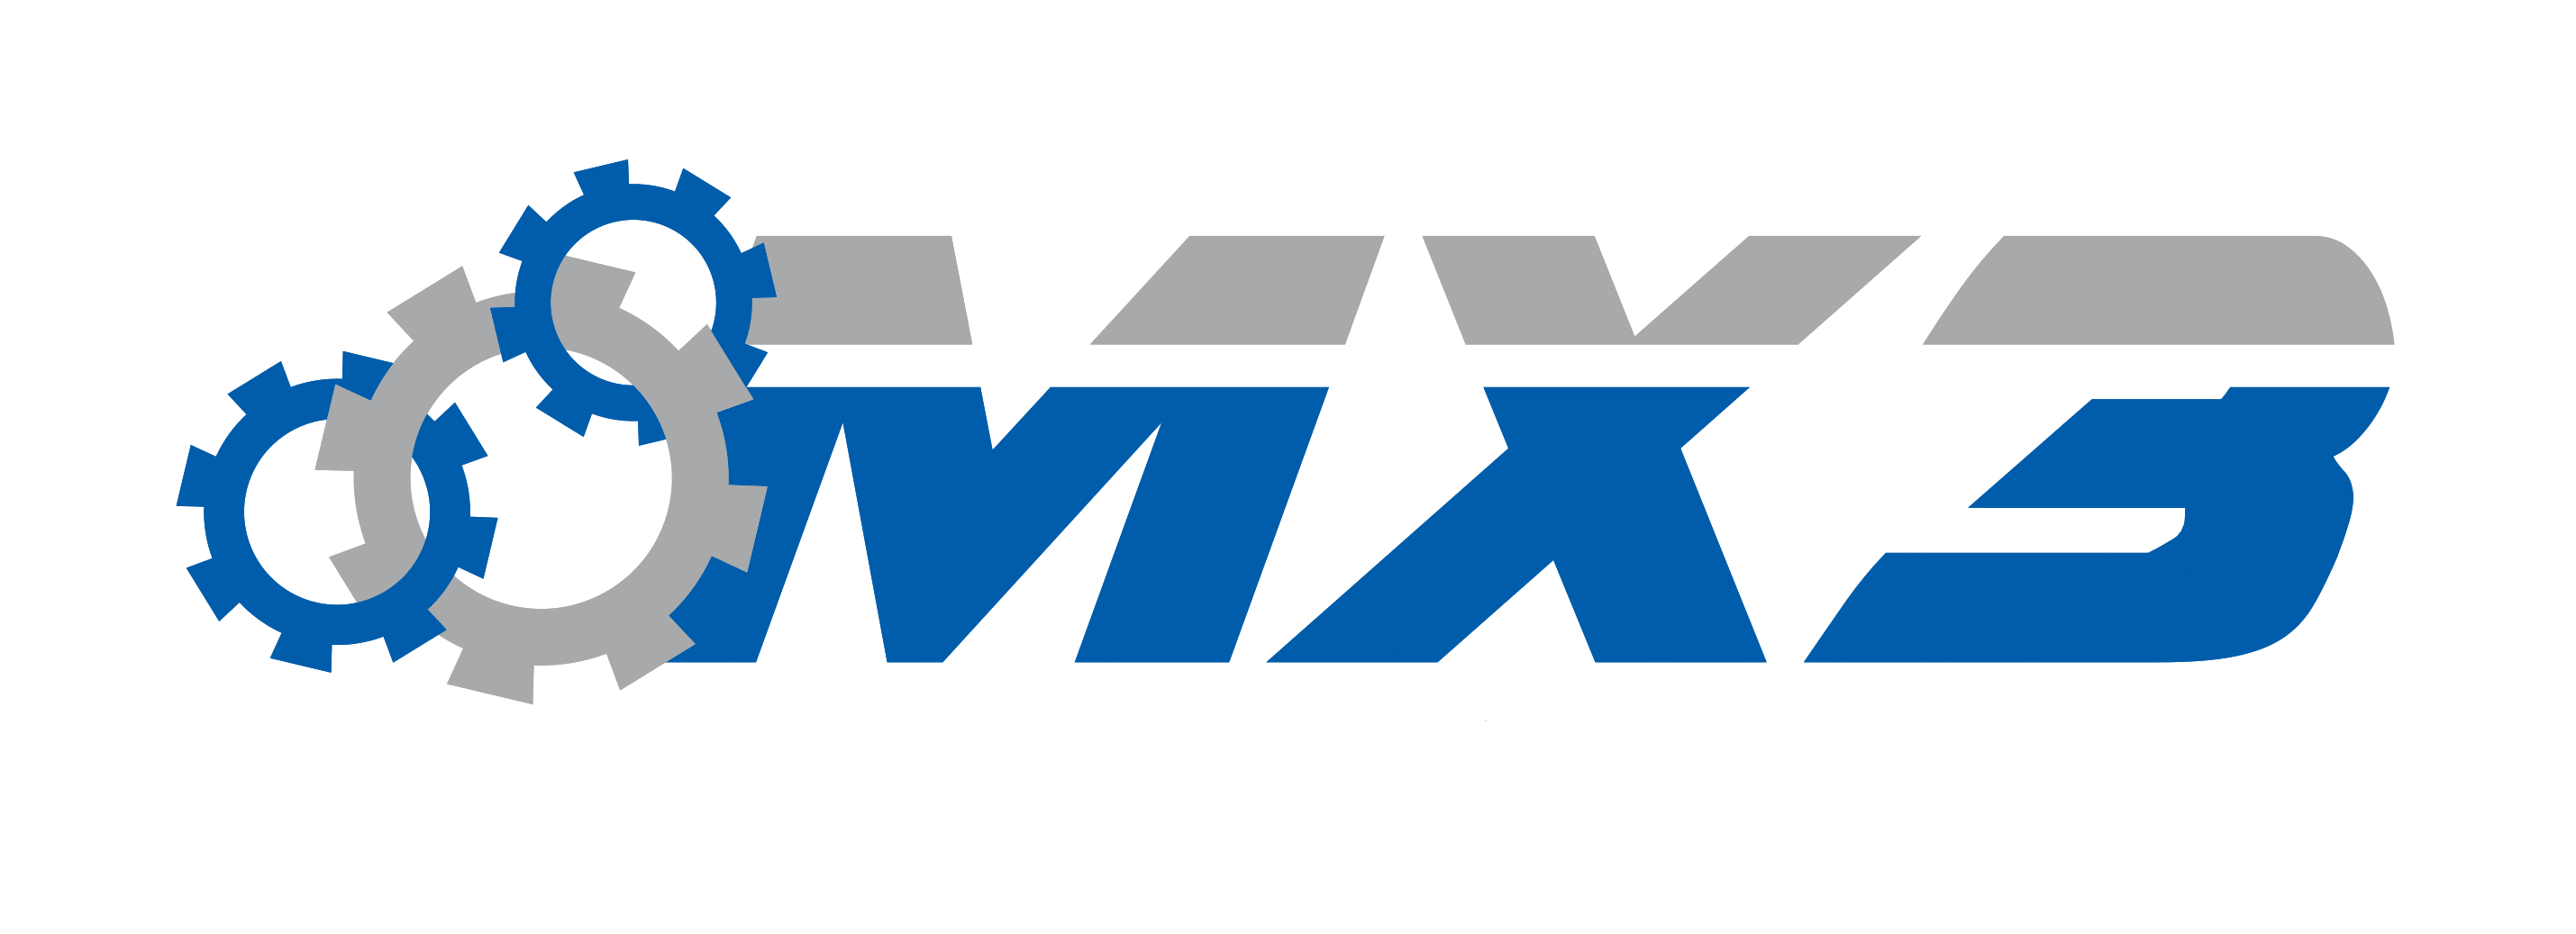 MX3 logo